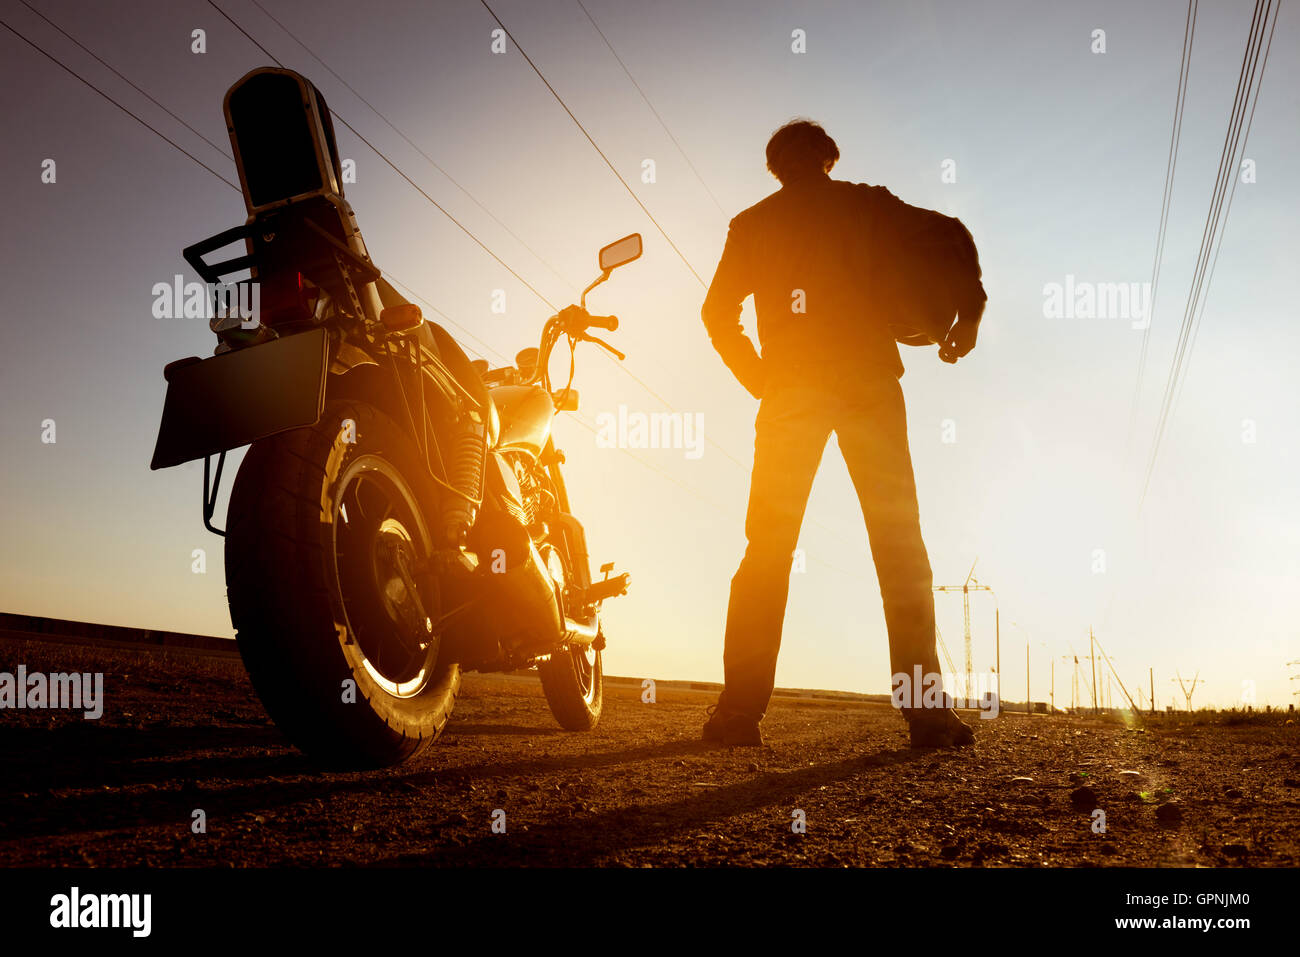 Moto avec motard se dresse sur fond coucher de soleil Banque D'Images